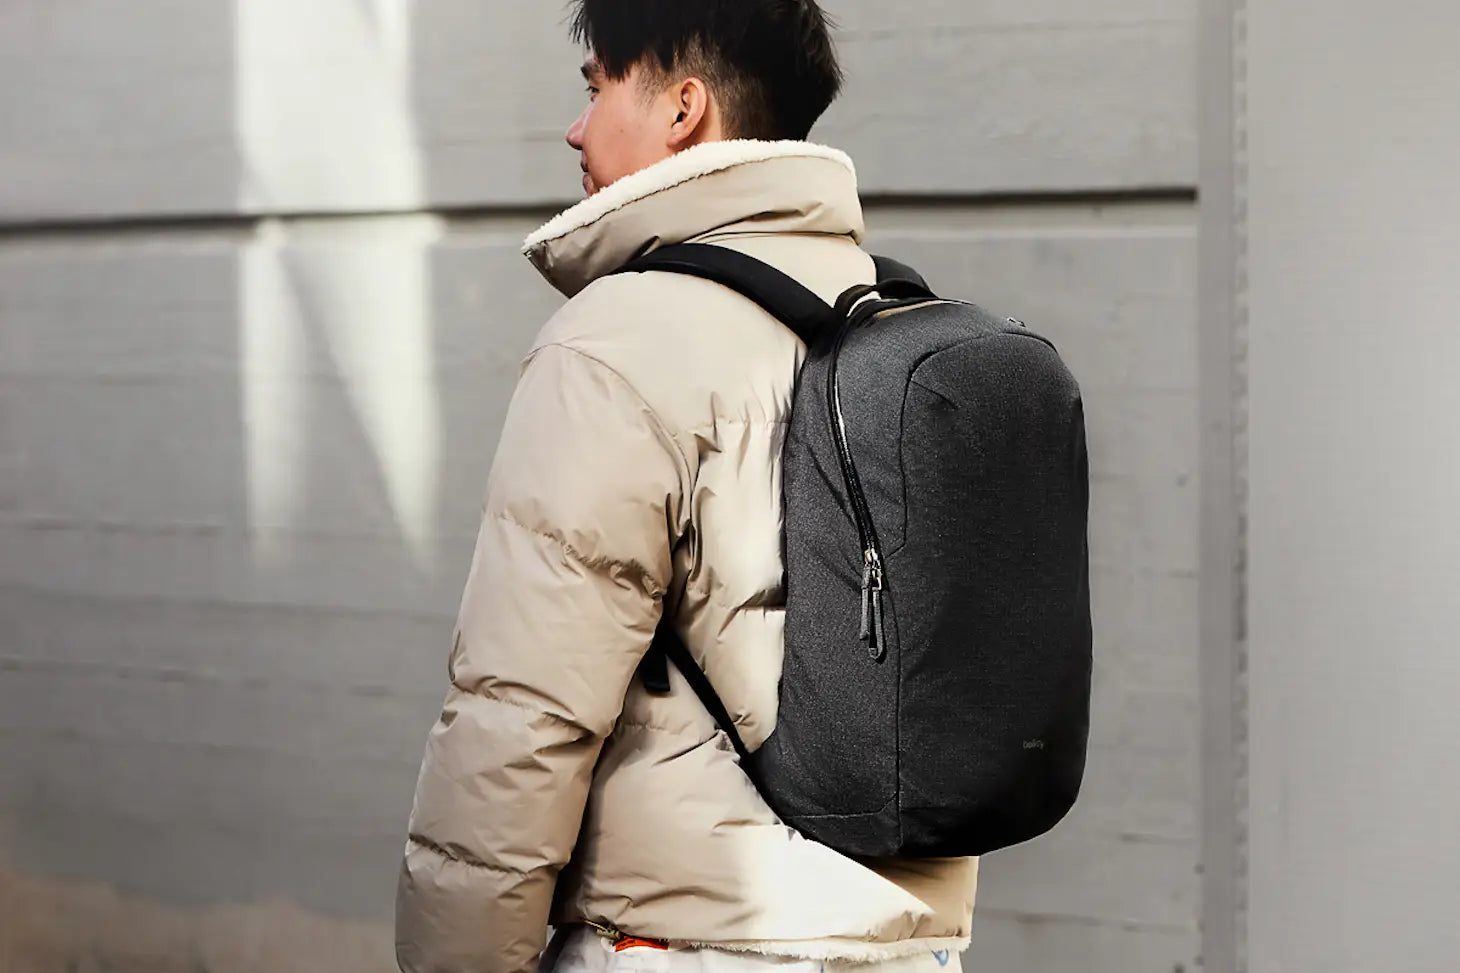 Via Backpack - Sleek Urban Style Laptop Bag